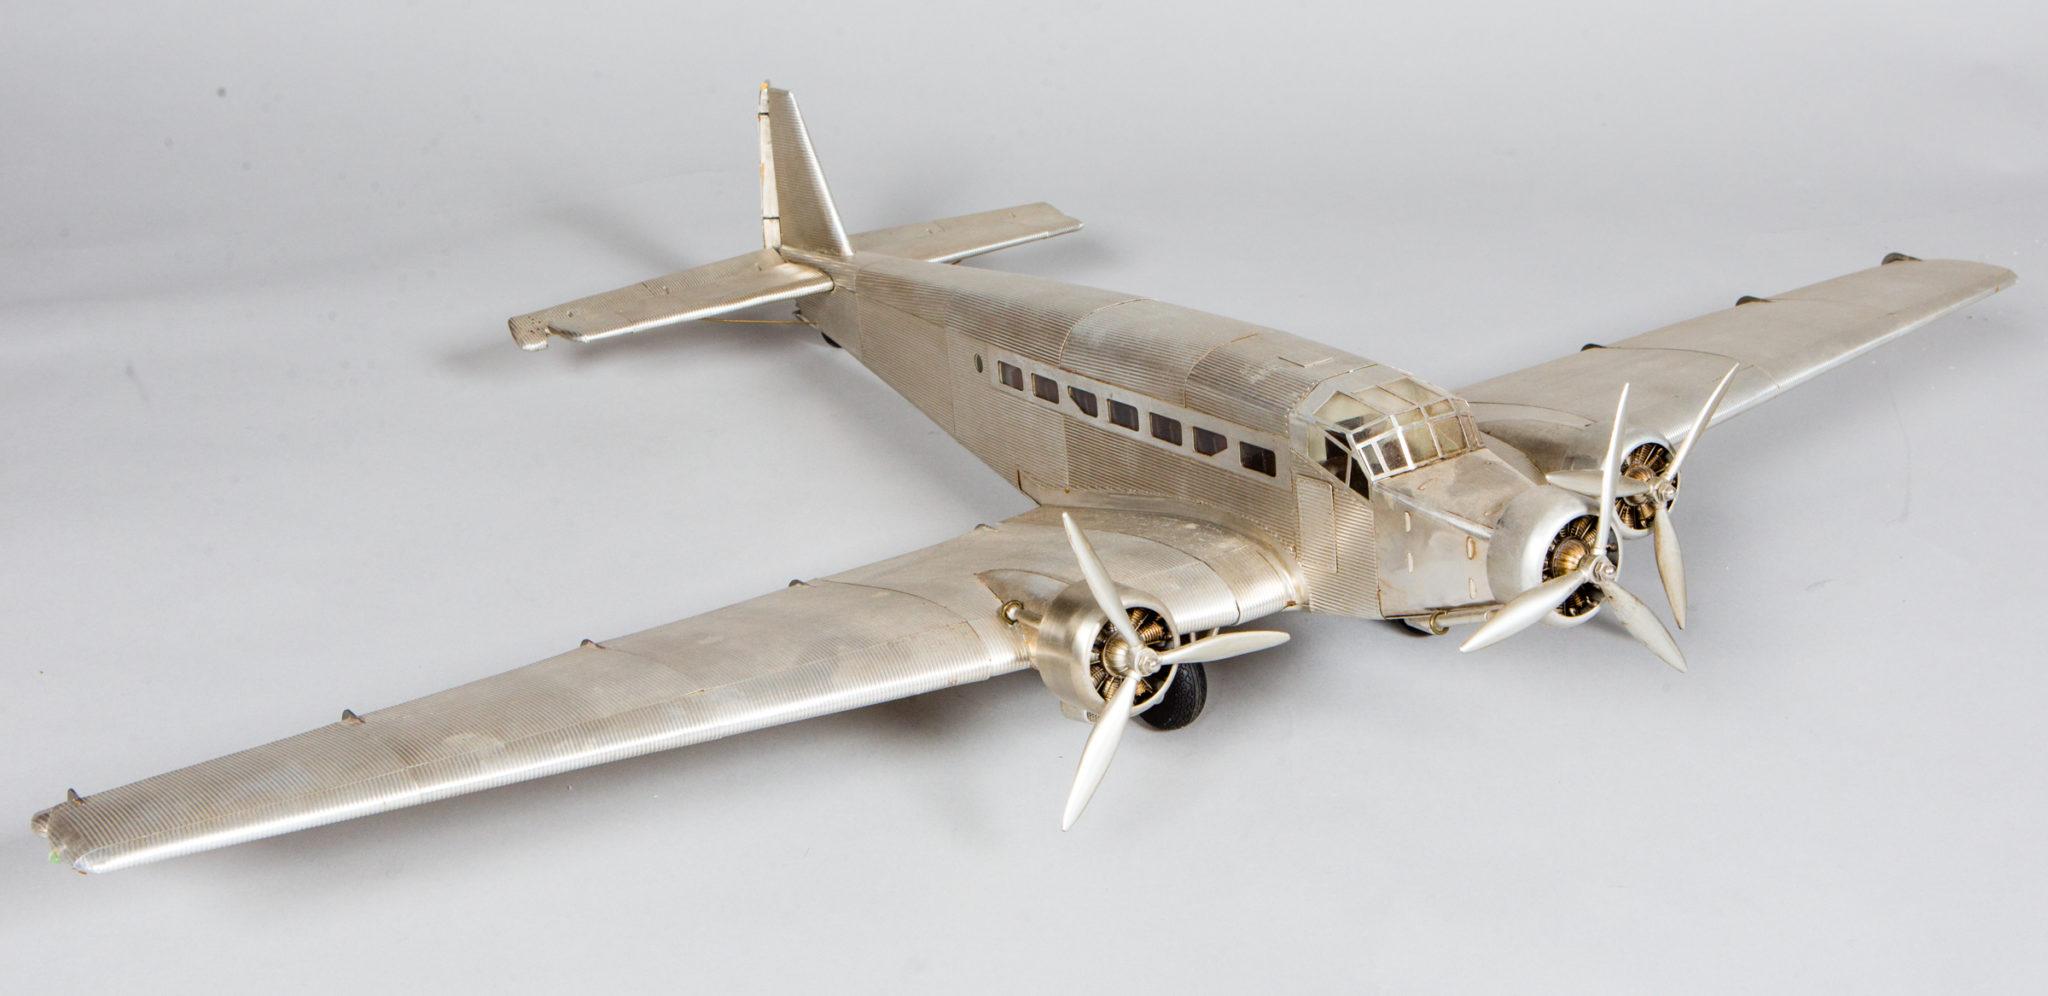 Metallmodellflugzeug mit beweglichen Steuerflächen und Propellern.